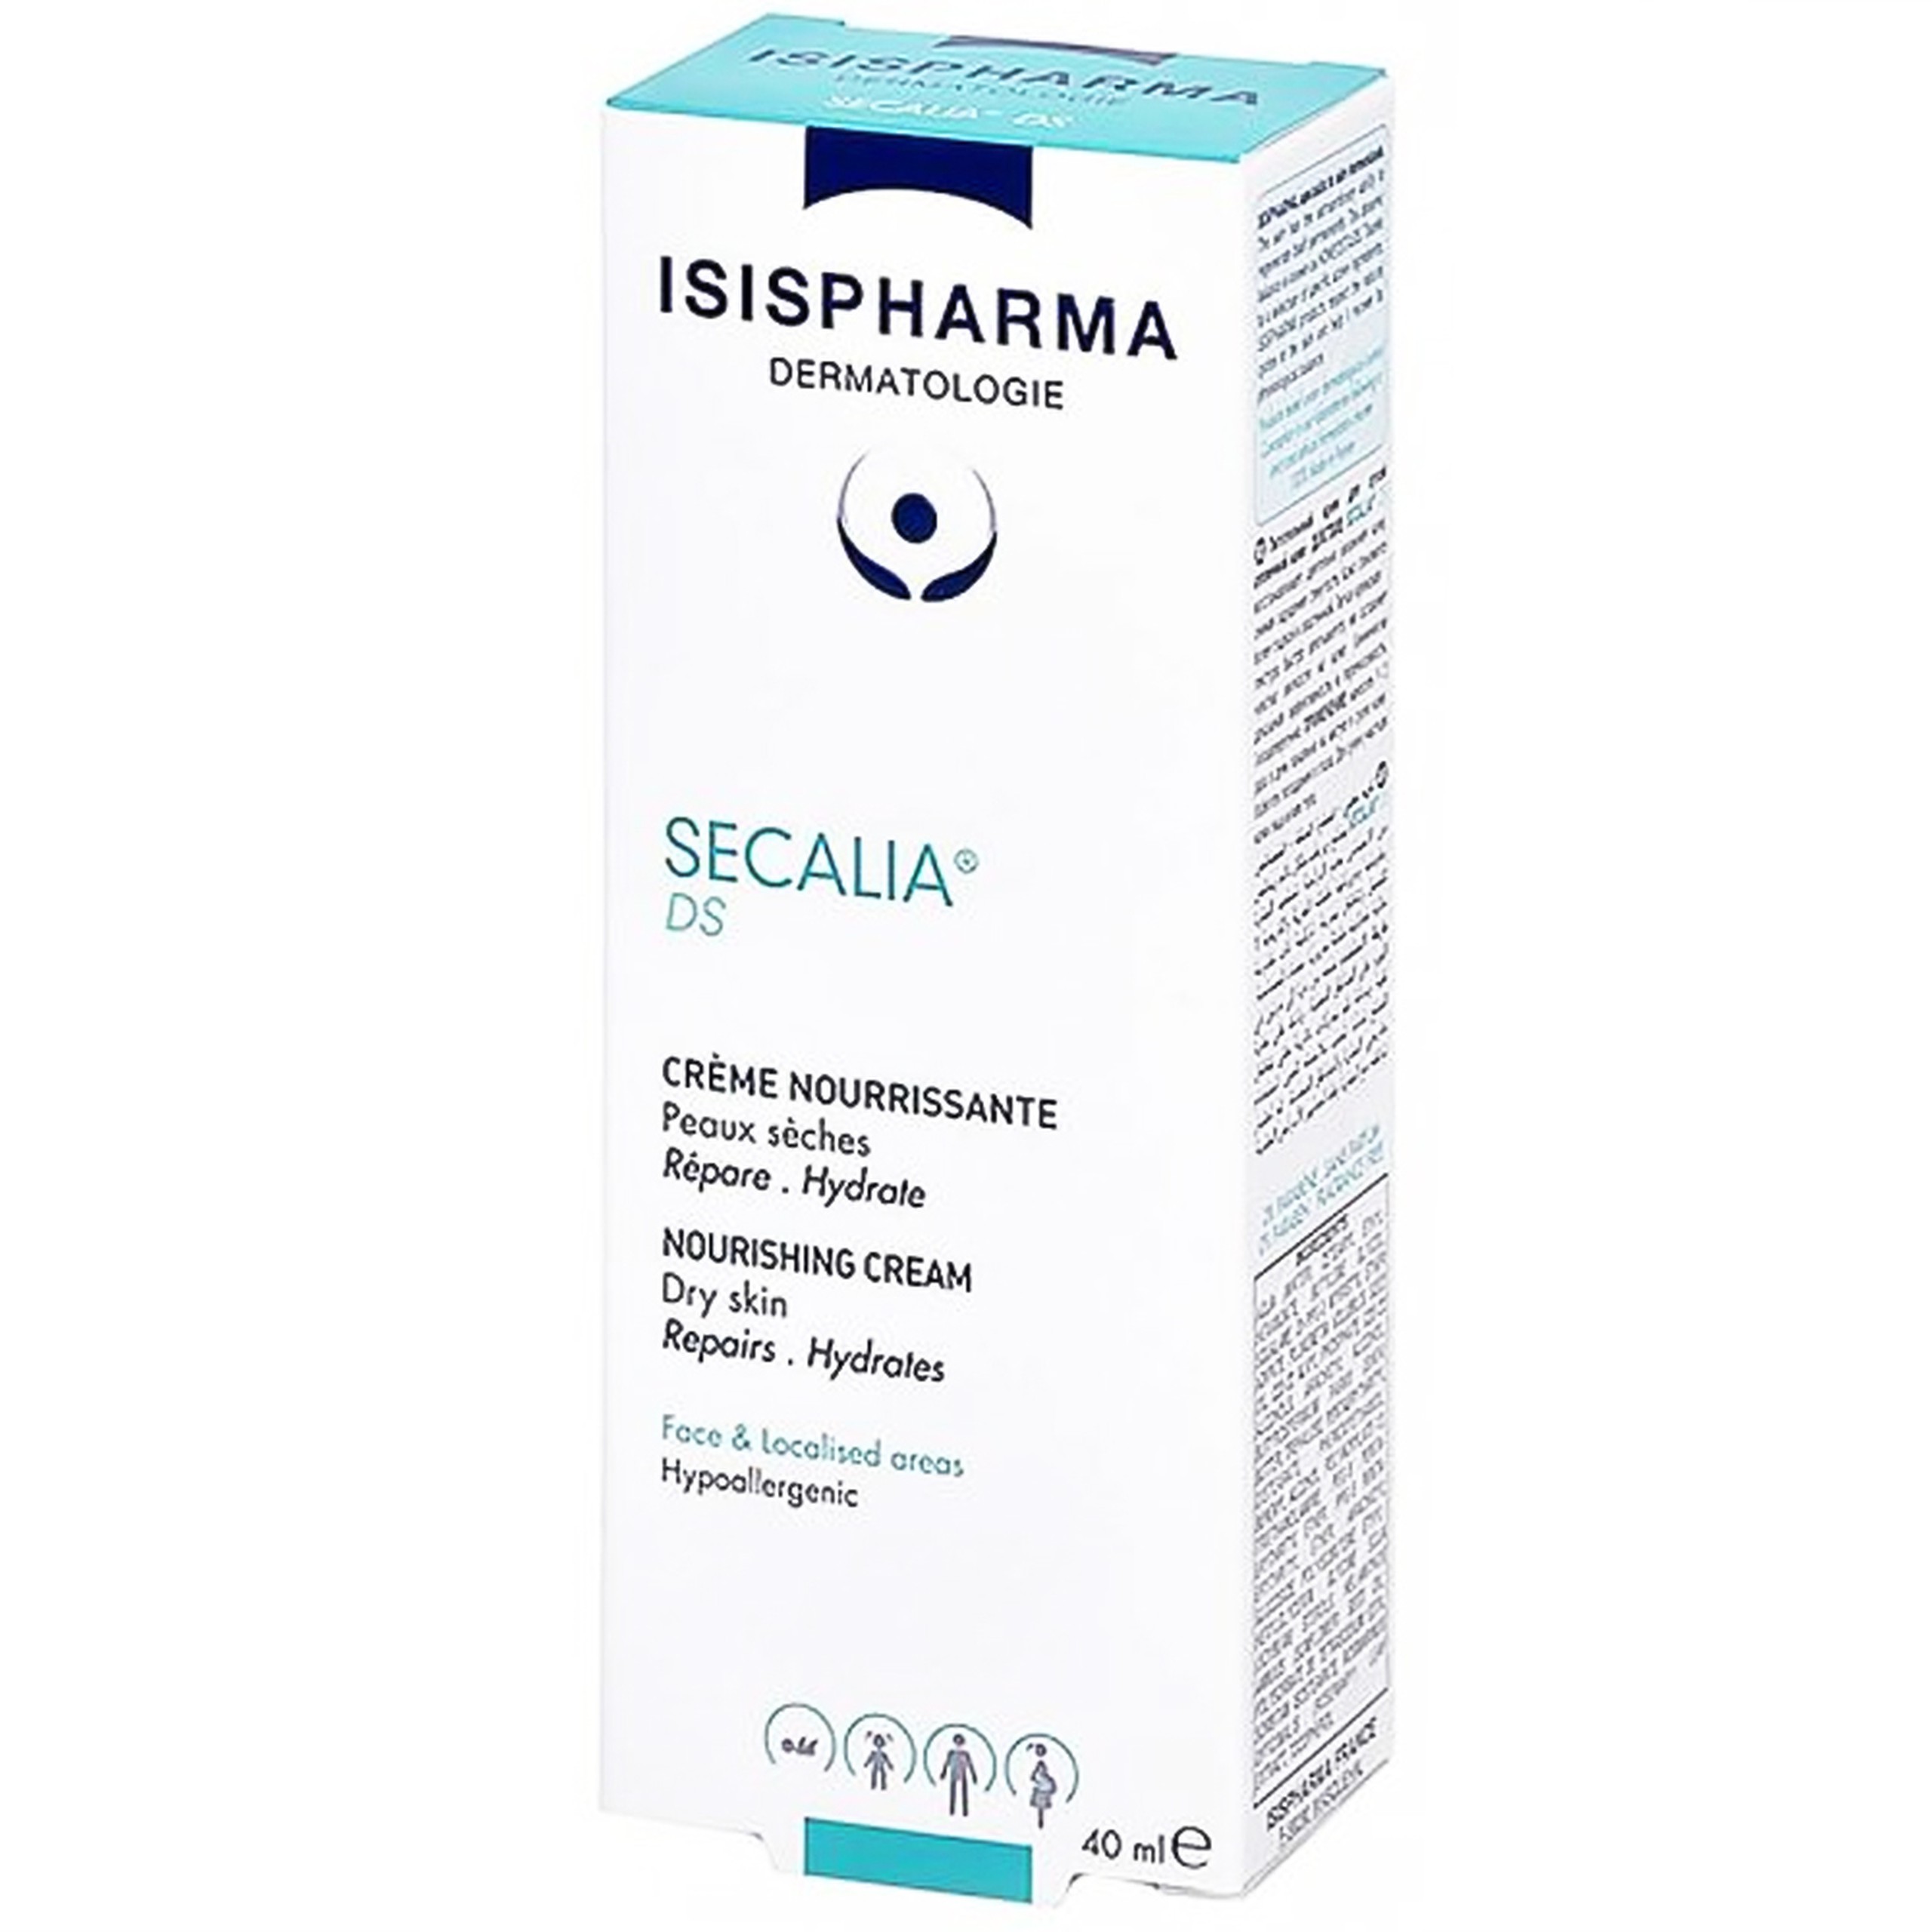 Kem dưỡng ẩm Secalia Ds IsisPharma giúp làm mềm và giữ ẩm cho da (40ml)